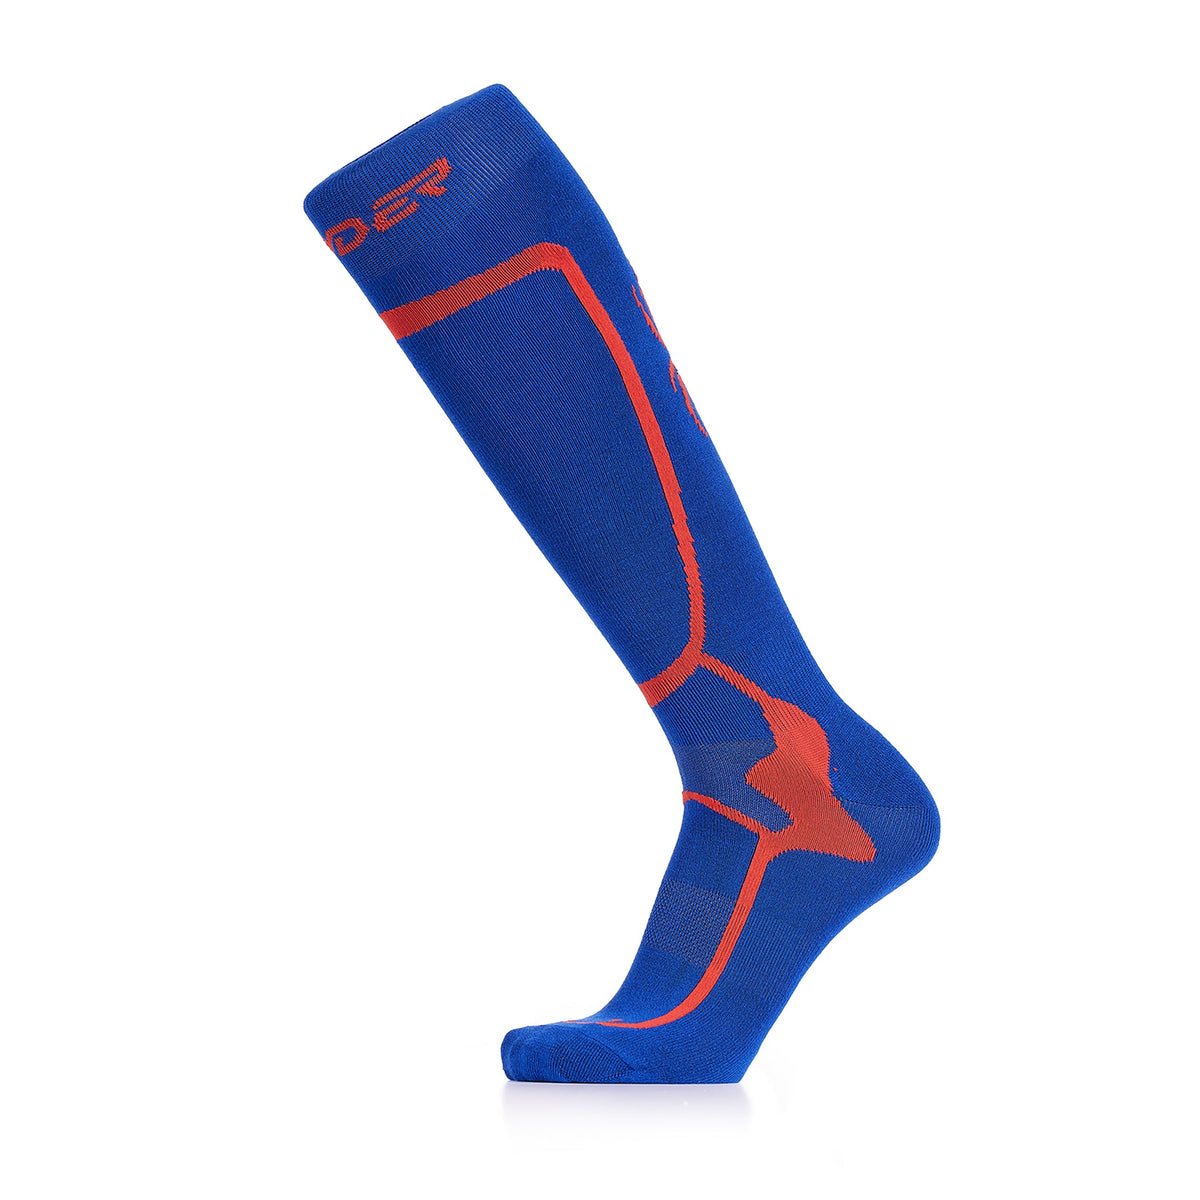 Spyder Pro Liner Ski Socks Blue